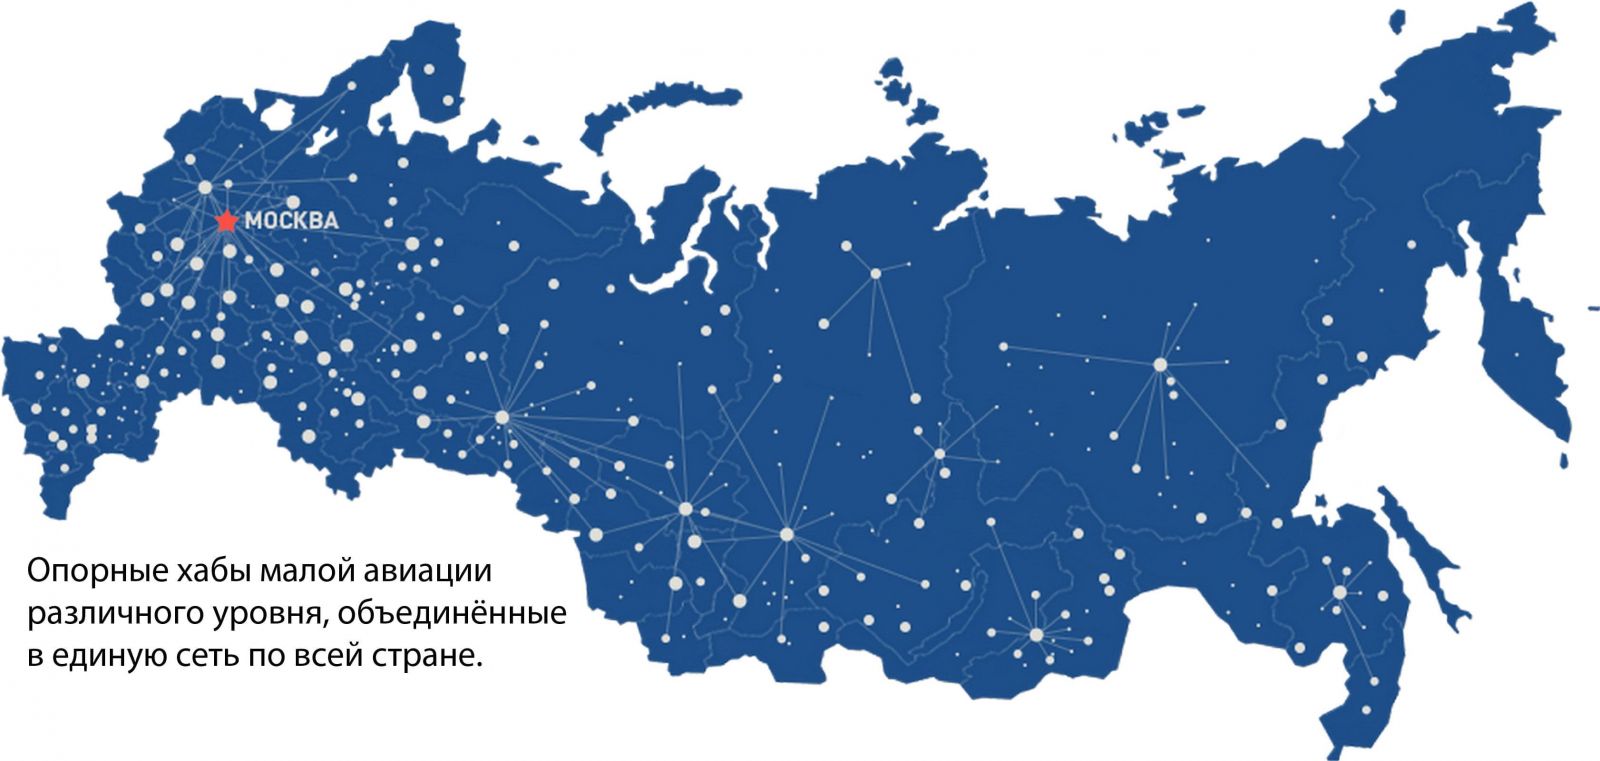 Национальные сети россии. Европейская Медиа группа радиостанции.